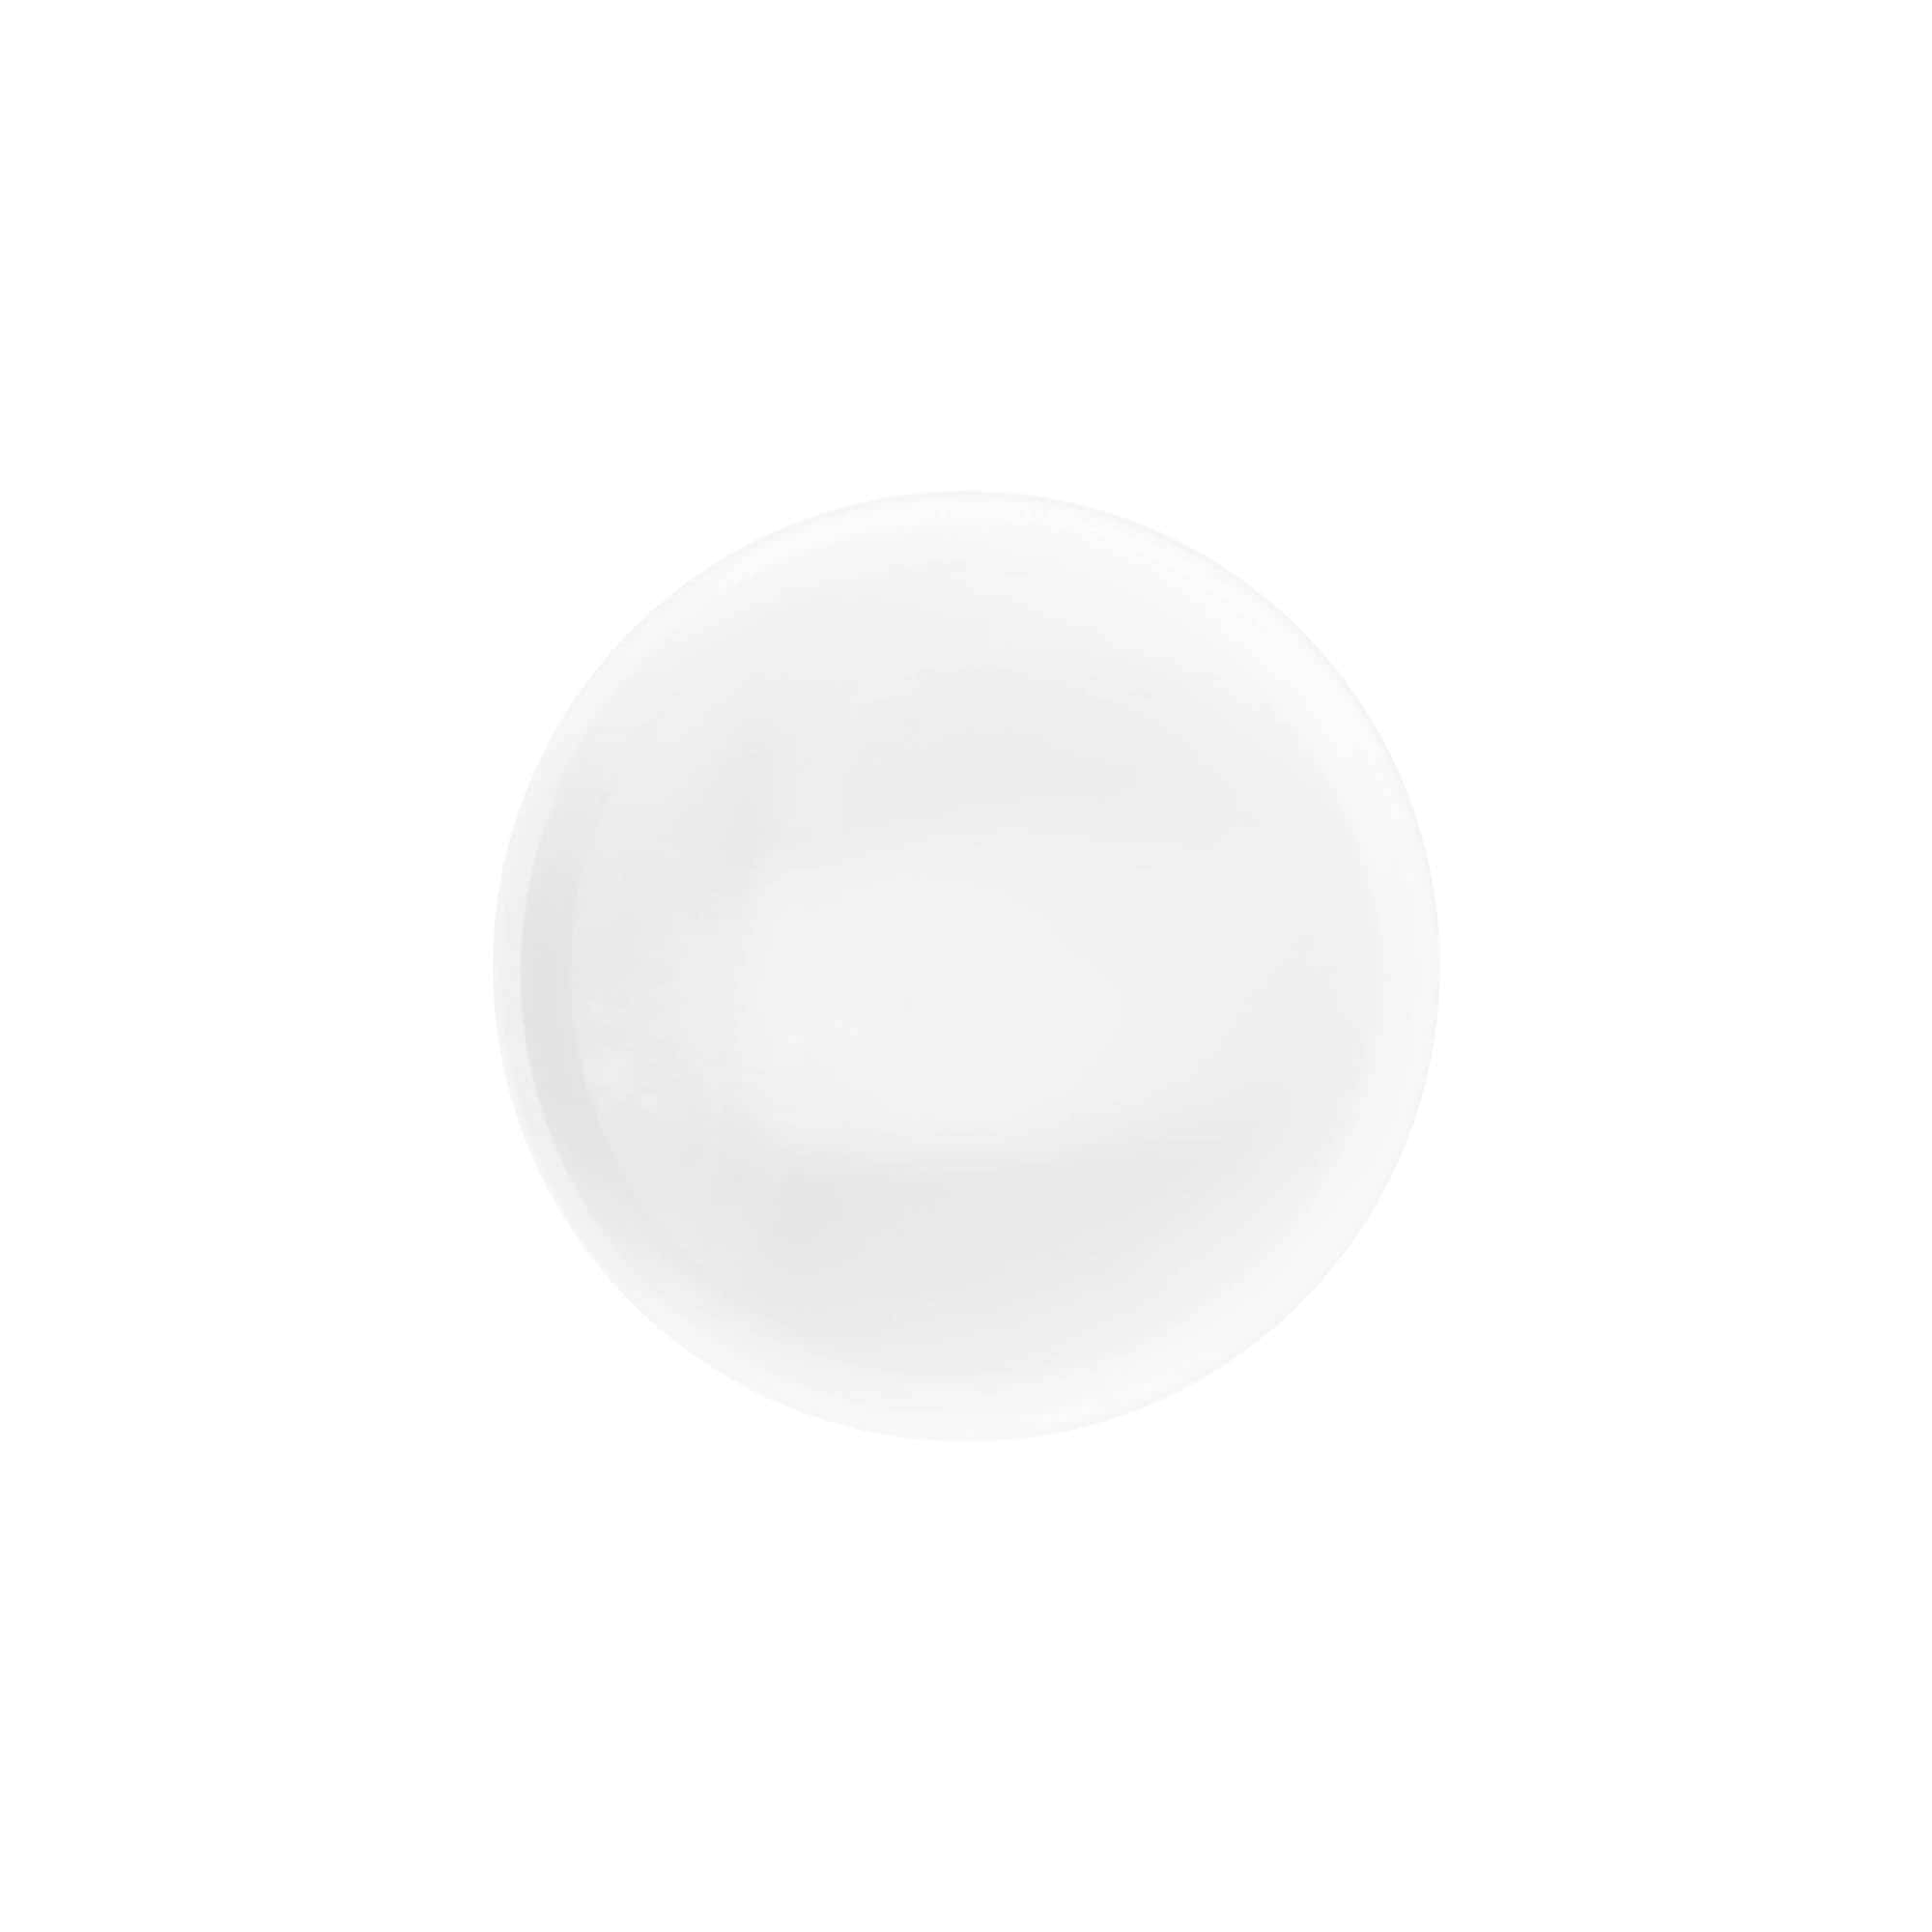 Zakrętka 'White Line' 125 ml, tworzywo sztuczne PP, kolor biały